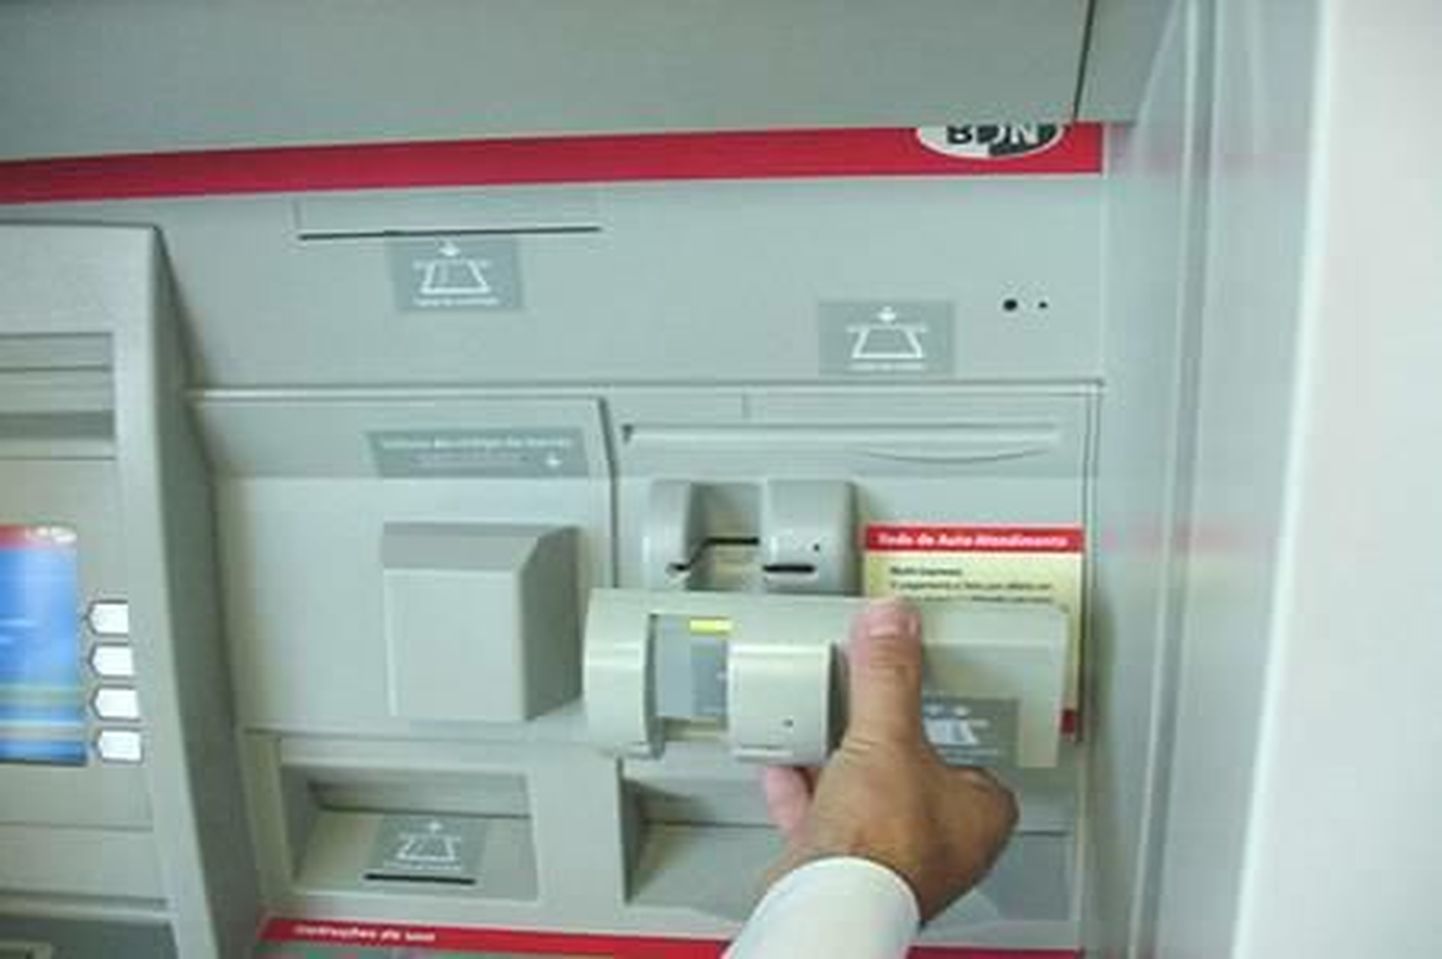 Мошенники воруют данные с банковских карт при помощи скиммера - устройства, устанавливаемого на банкомат.